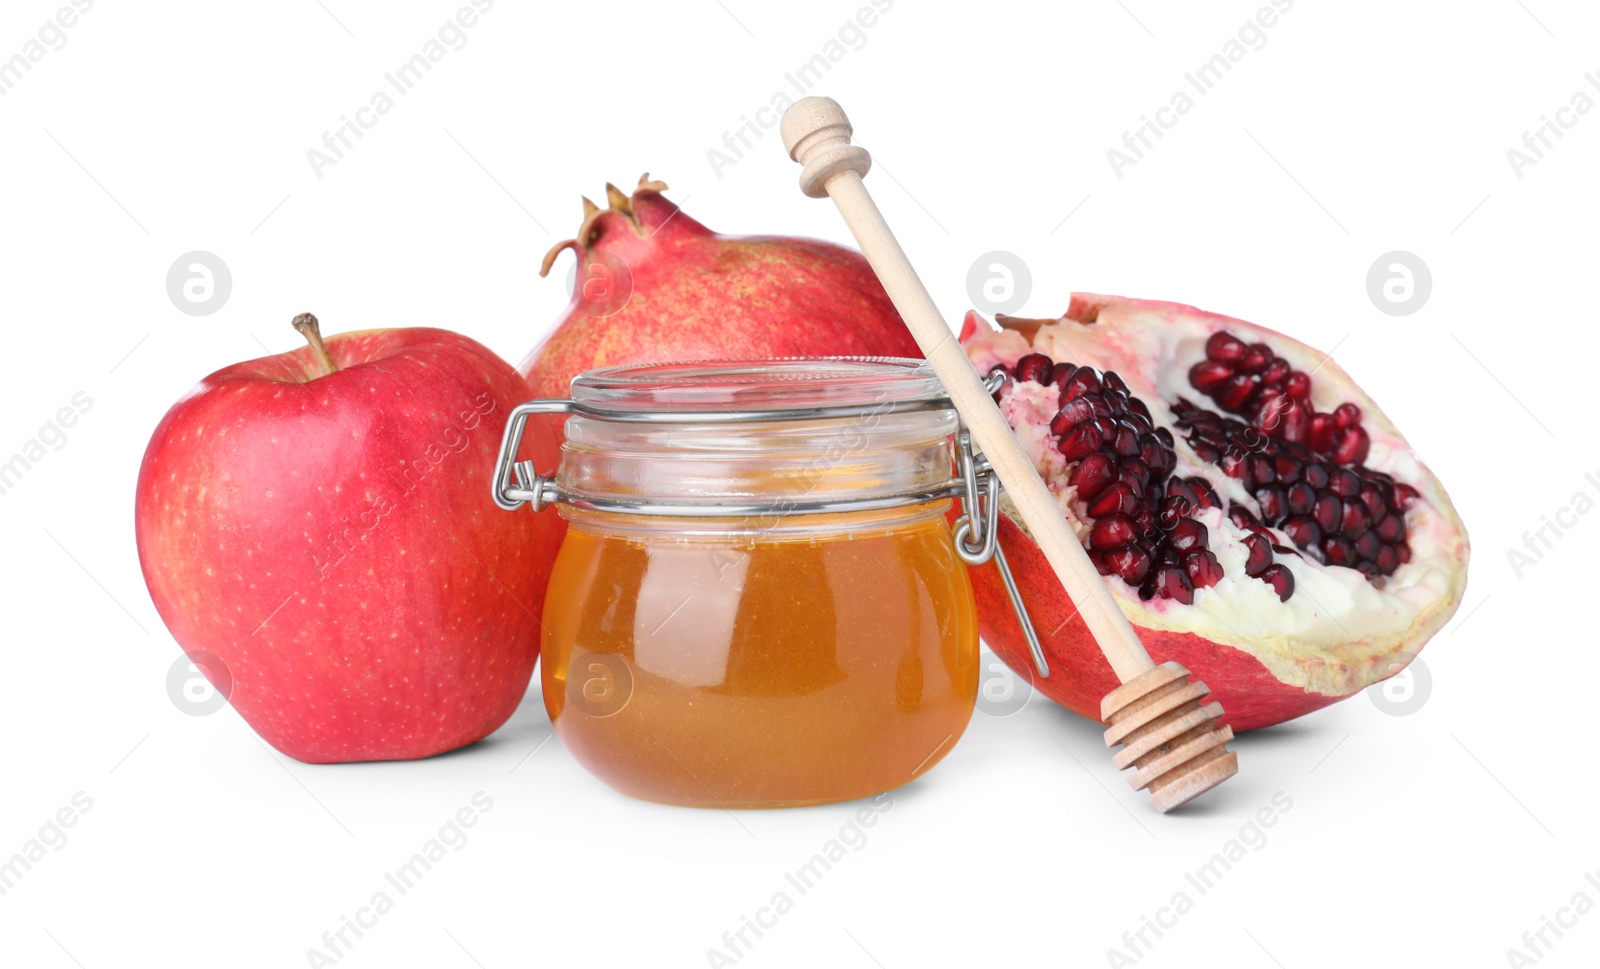 Photo of Honey, apple and pomegranates on white background. Rosh Hashanah holiday